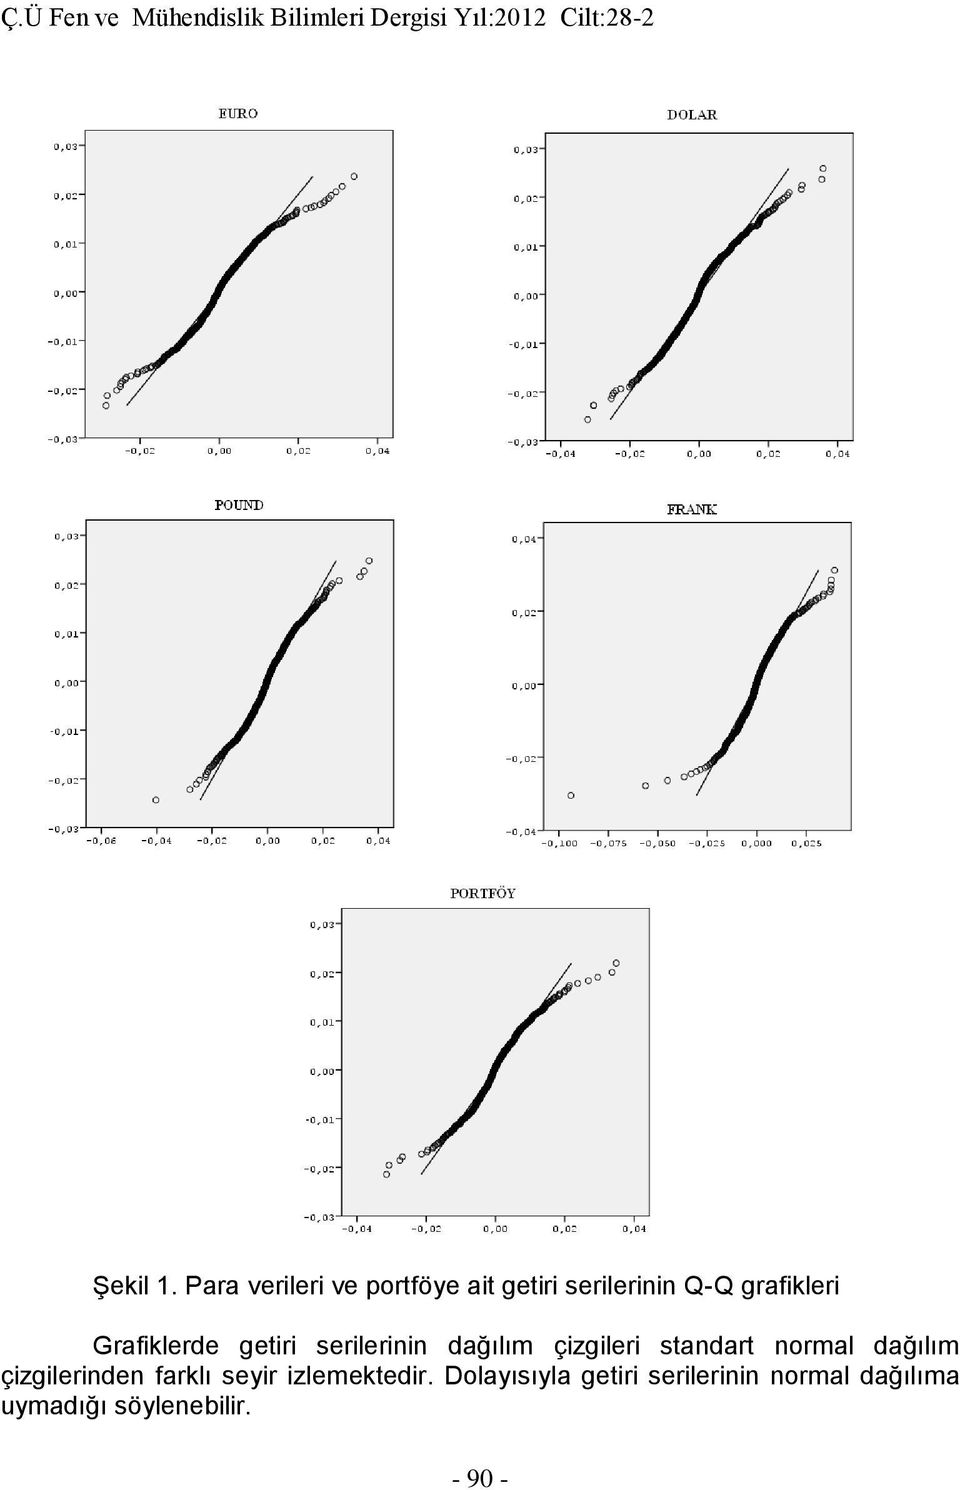 Grafiklerde getiri serilerinin dağılım çizgileri standart normal